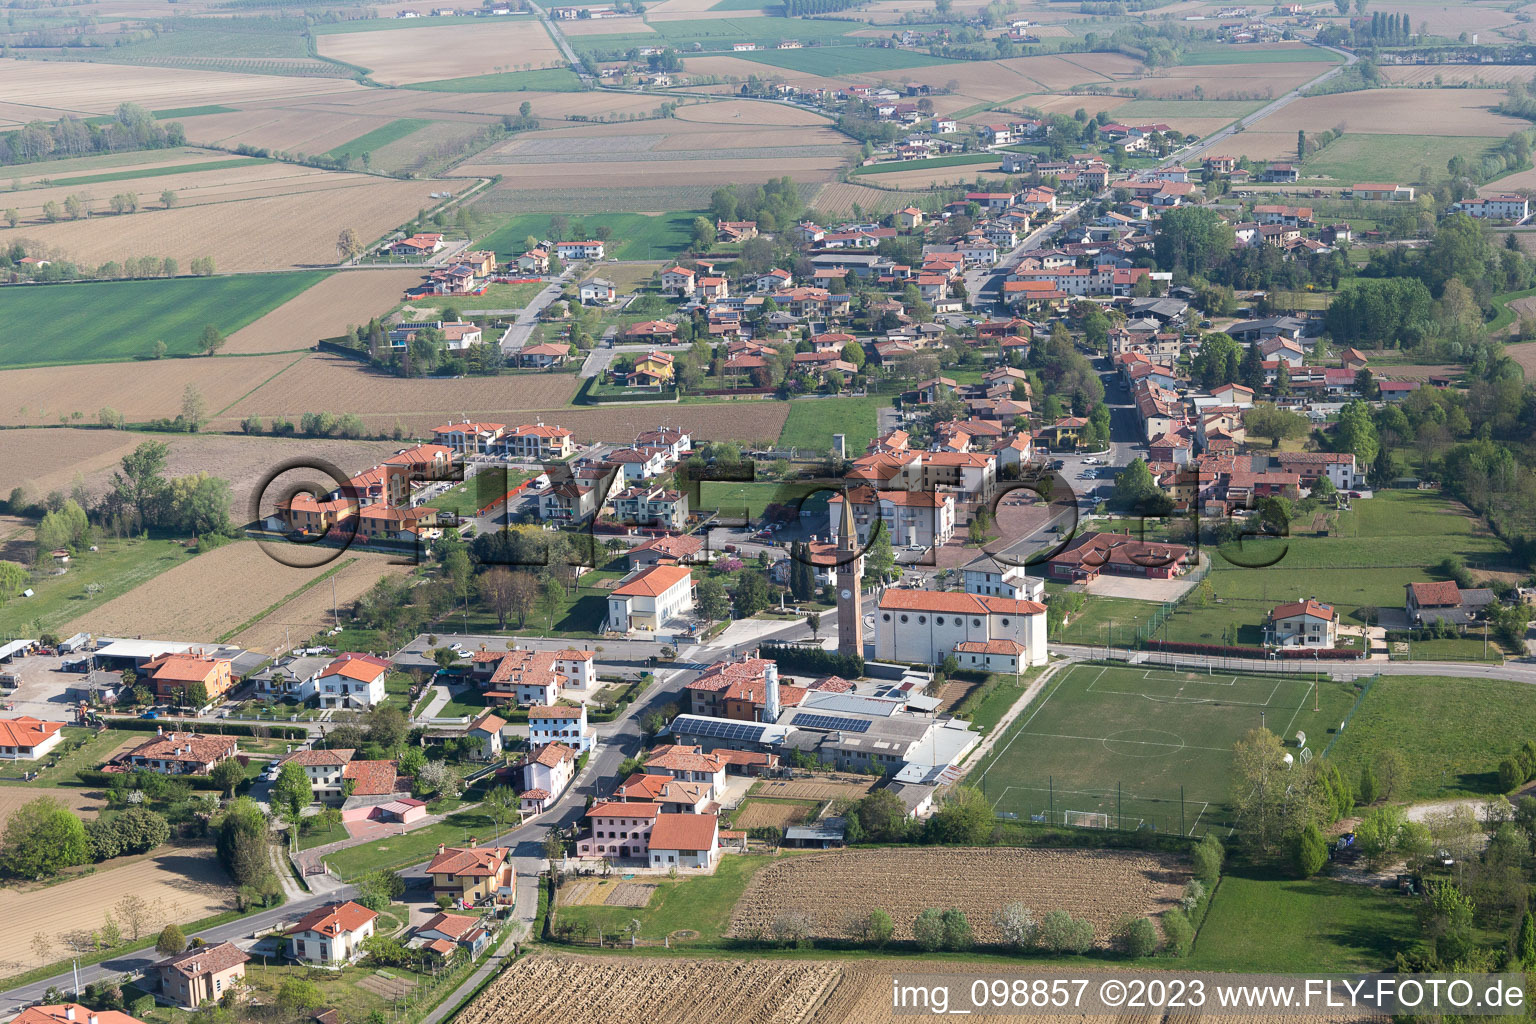 Aerial view of Sega-Malcanton in the state Veneto, Italy